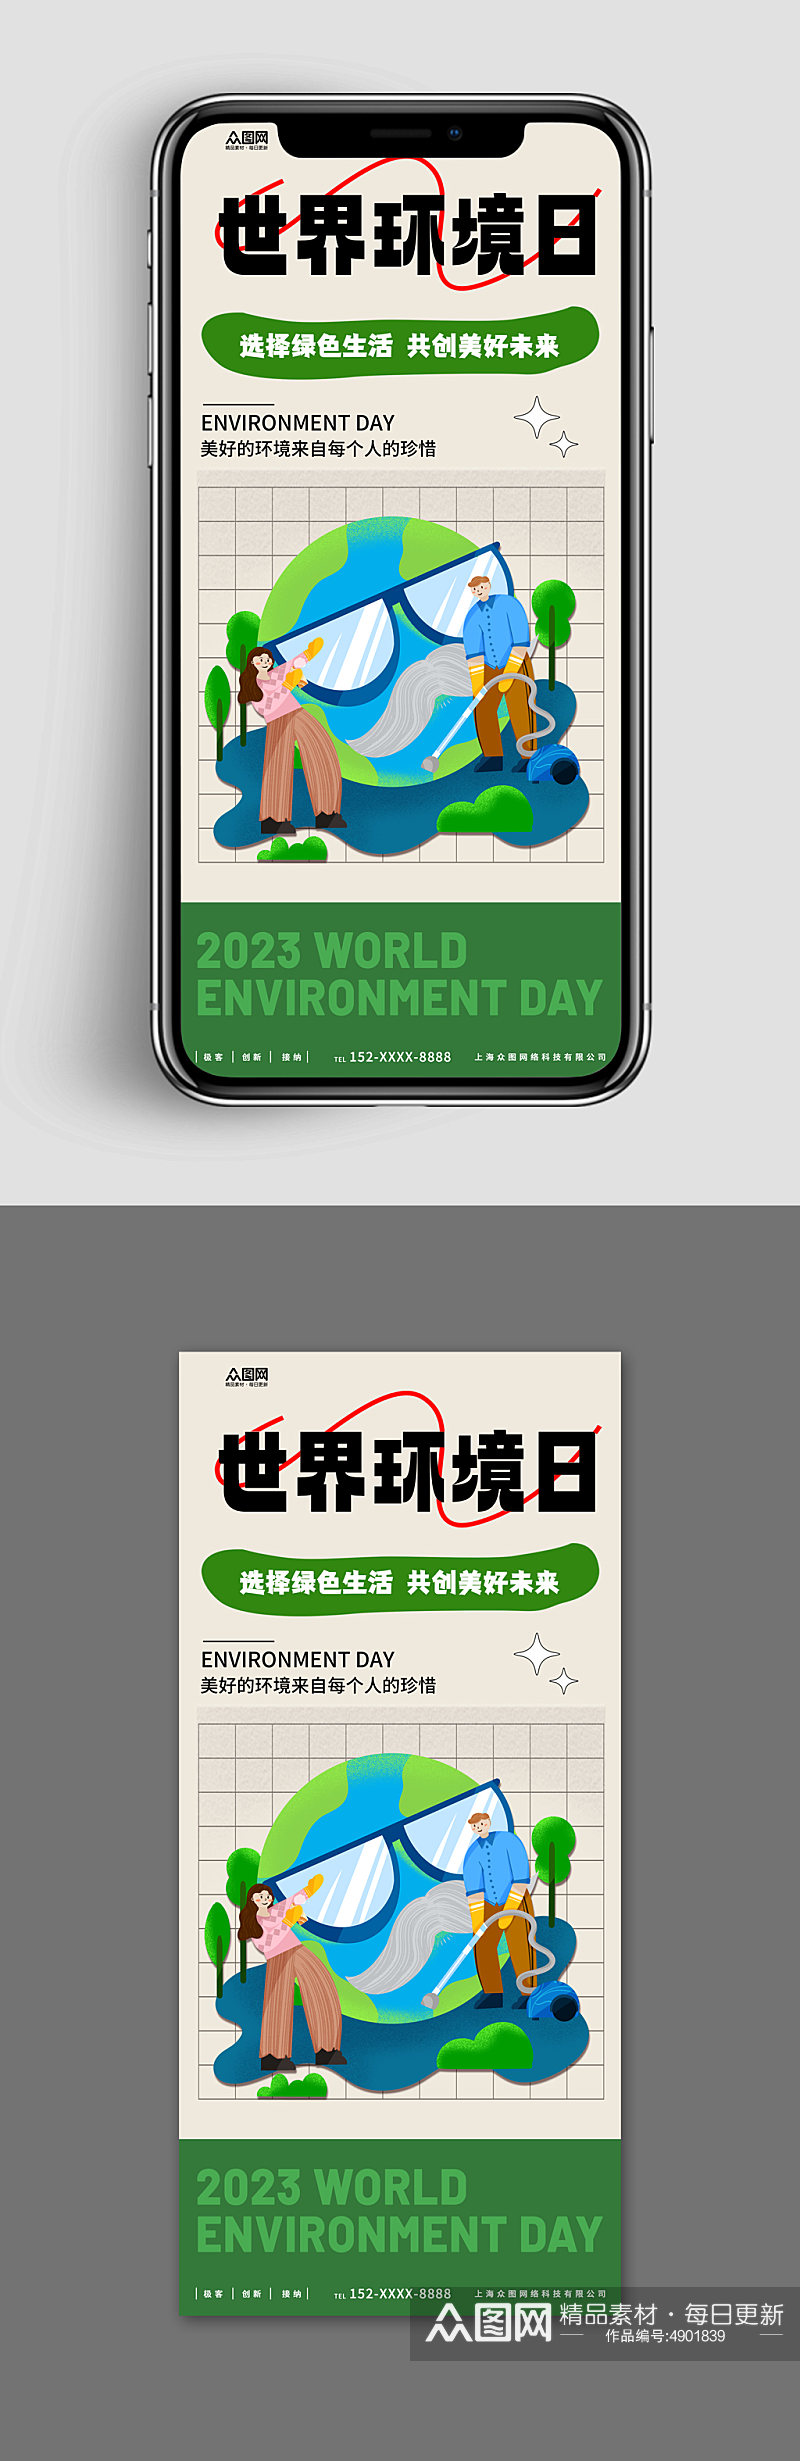 新媒体手机海报世界环境日环保宣传海报素材